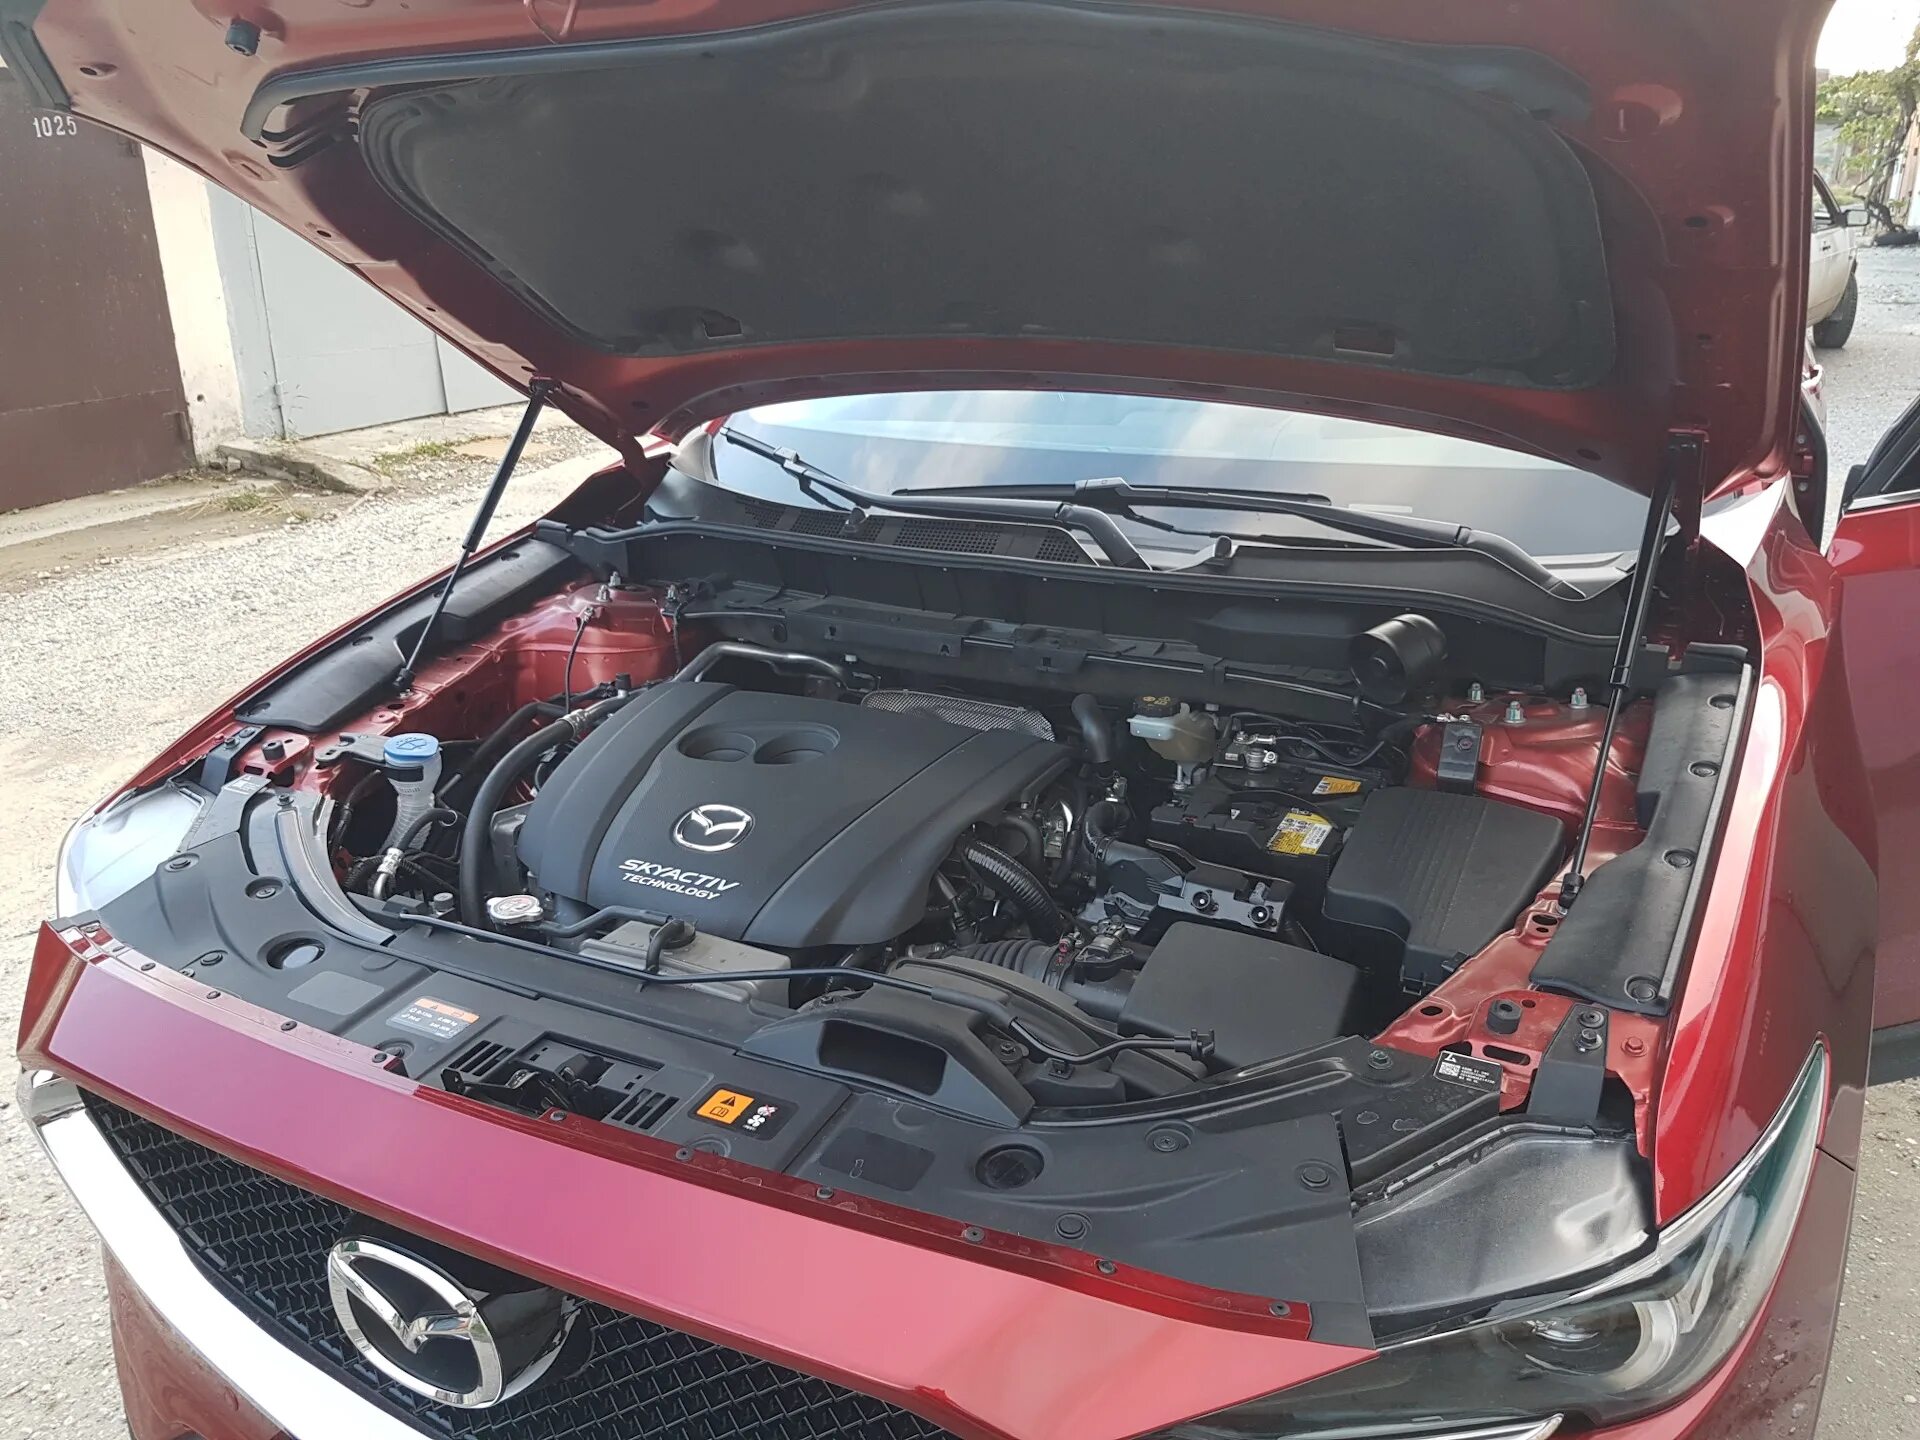 Капот мазда сх 5. Капот Mazda CX-5. Mazda CX-5 2019 открытый капот. Уплотнитель капота Мазда СХ-5.